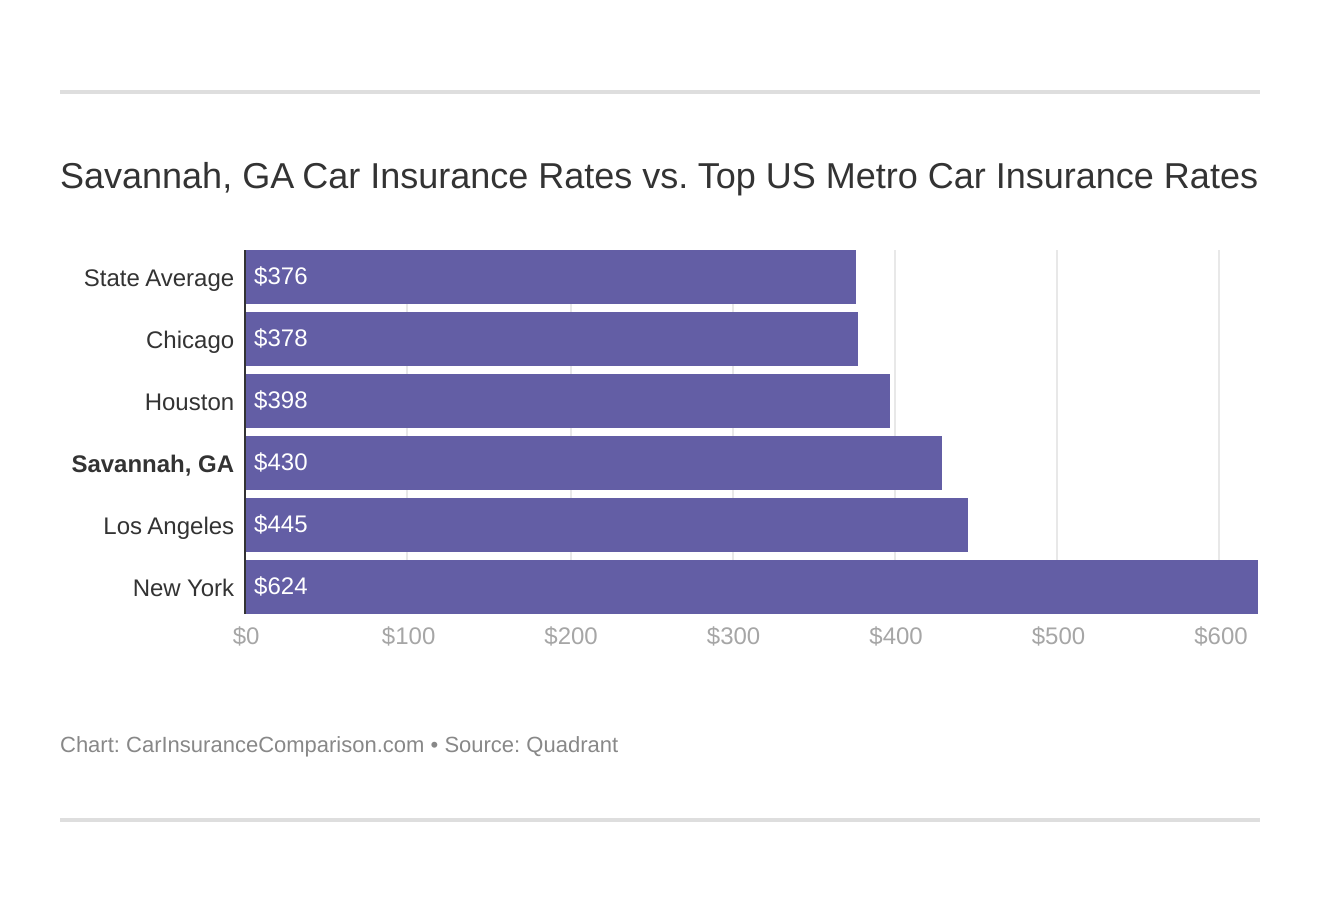 Savannah, GA Car Insurance Rates vs. Top US Metro Car Insurance Rates